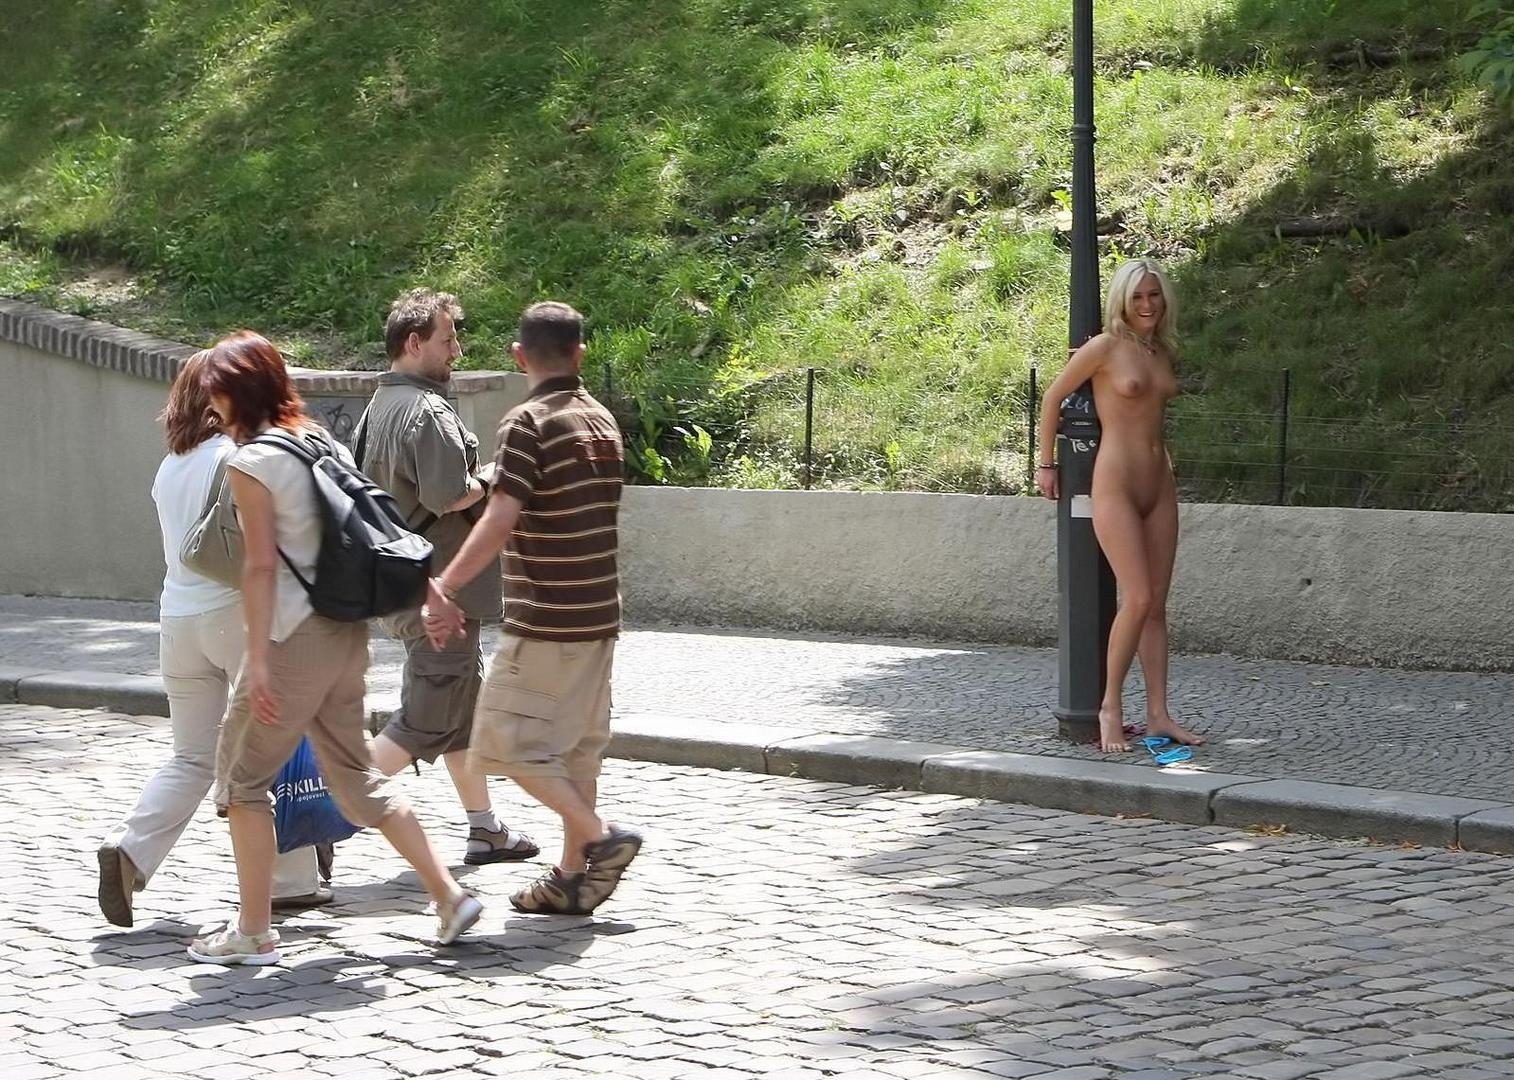 Проститутка согласилась сфотографироваться голышом